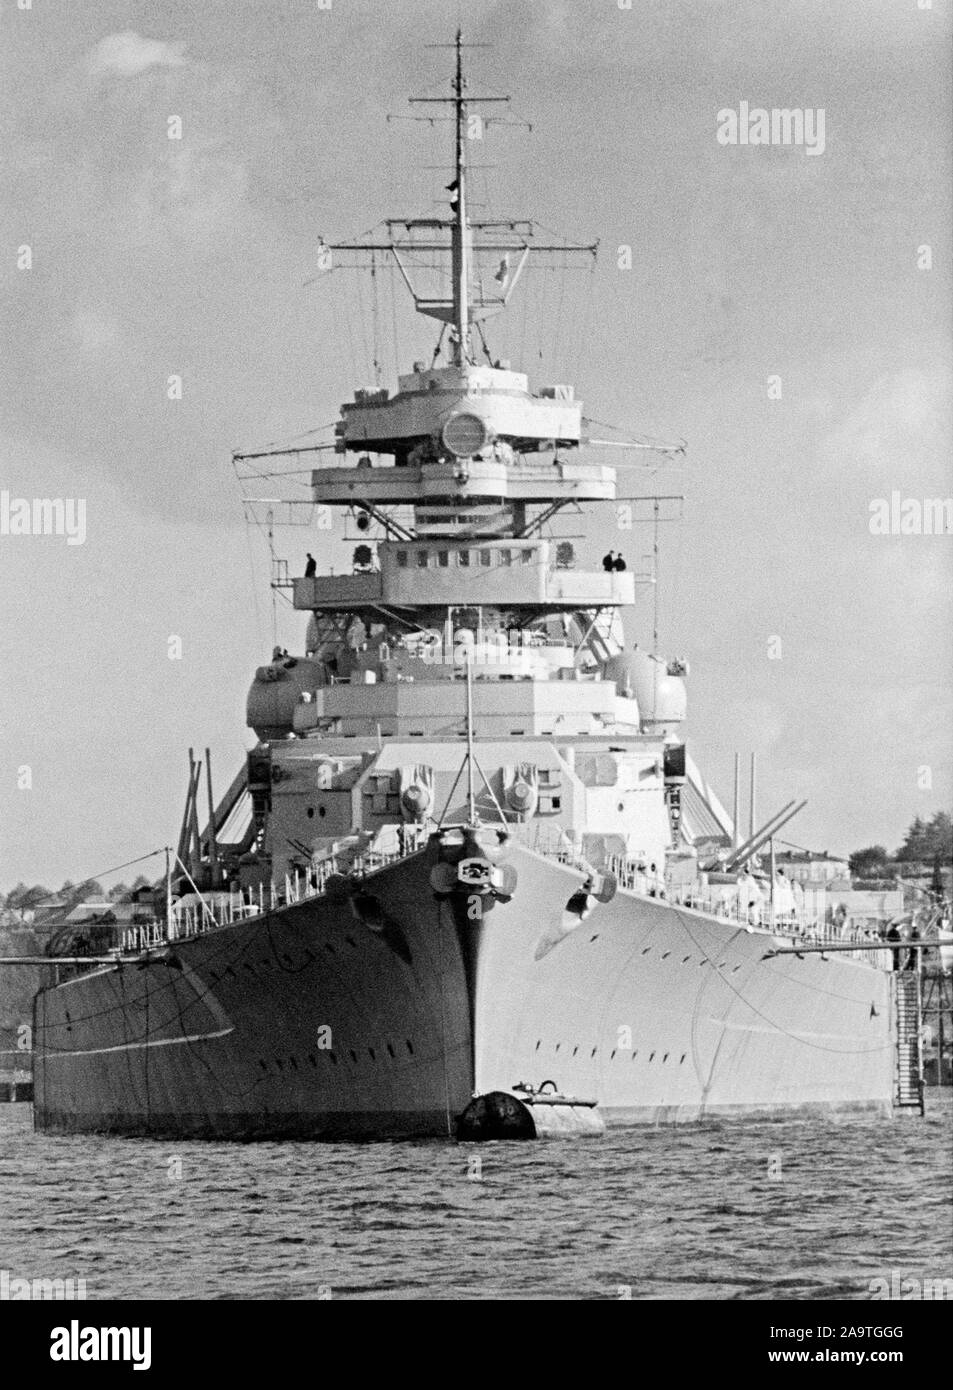 Acorazado Bismarck, acorazado de clase Bismarck construido para la Alemania nazi Kriegsmarine Foto de stock